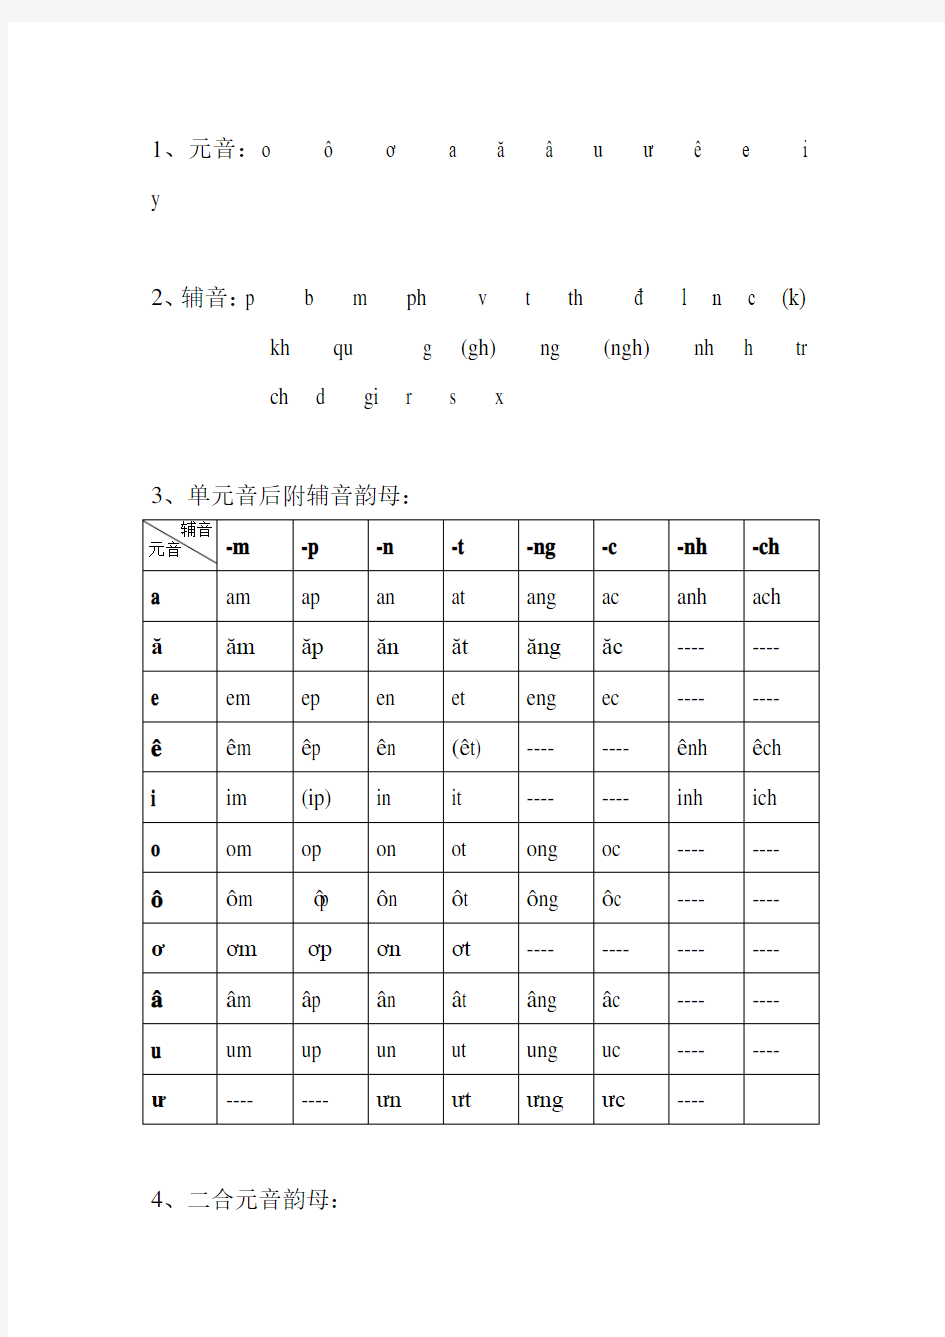 初级越南语字母表